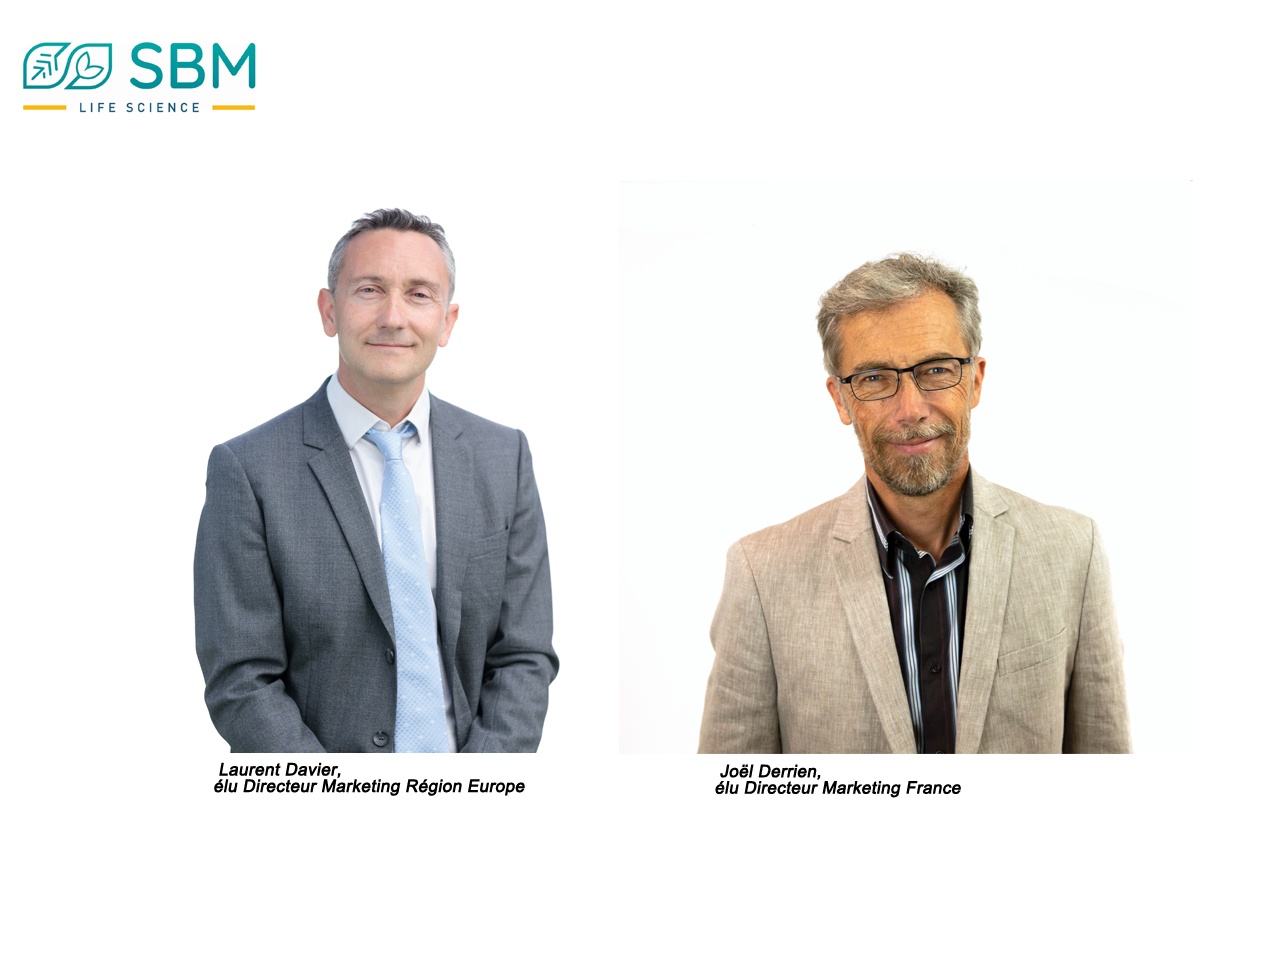 SBM Life Science réinvente sa stratégie marketing et annonce des nominations clés en Europe et en France